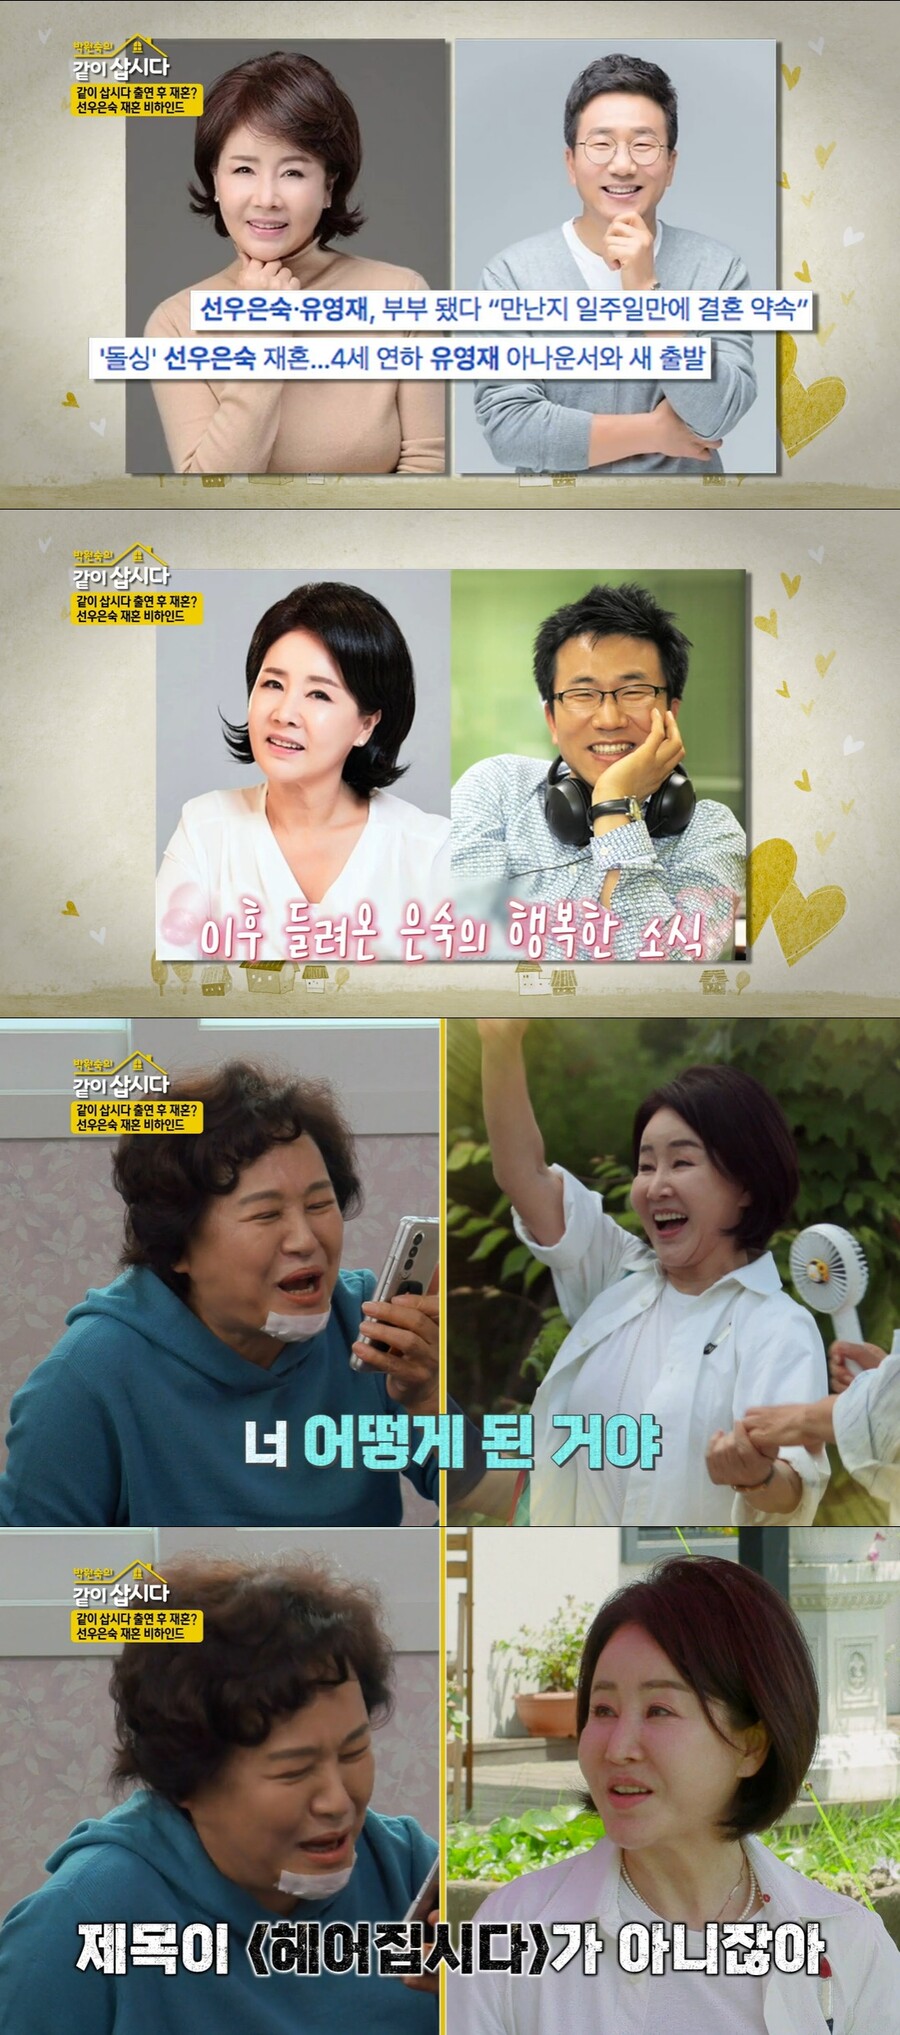 ▲ KBS2 예능프로그램 '박원숙의 같이 삽시다' 방송화면. 출처| KBS